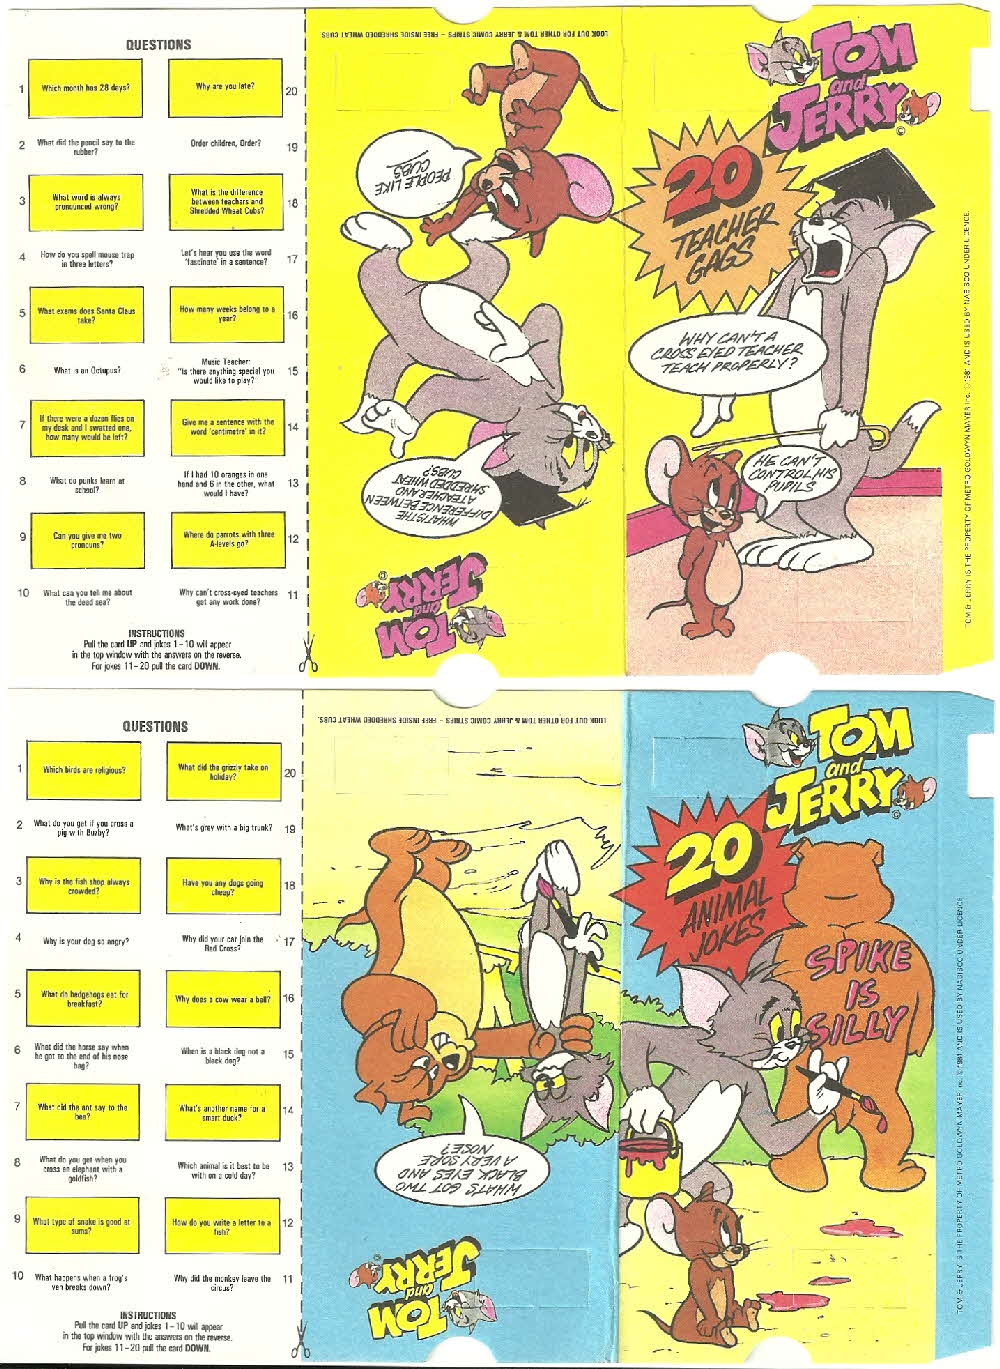 1982 Spoonsize Tom & Jerry Comic Strip (1)